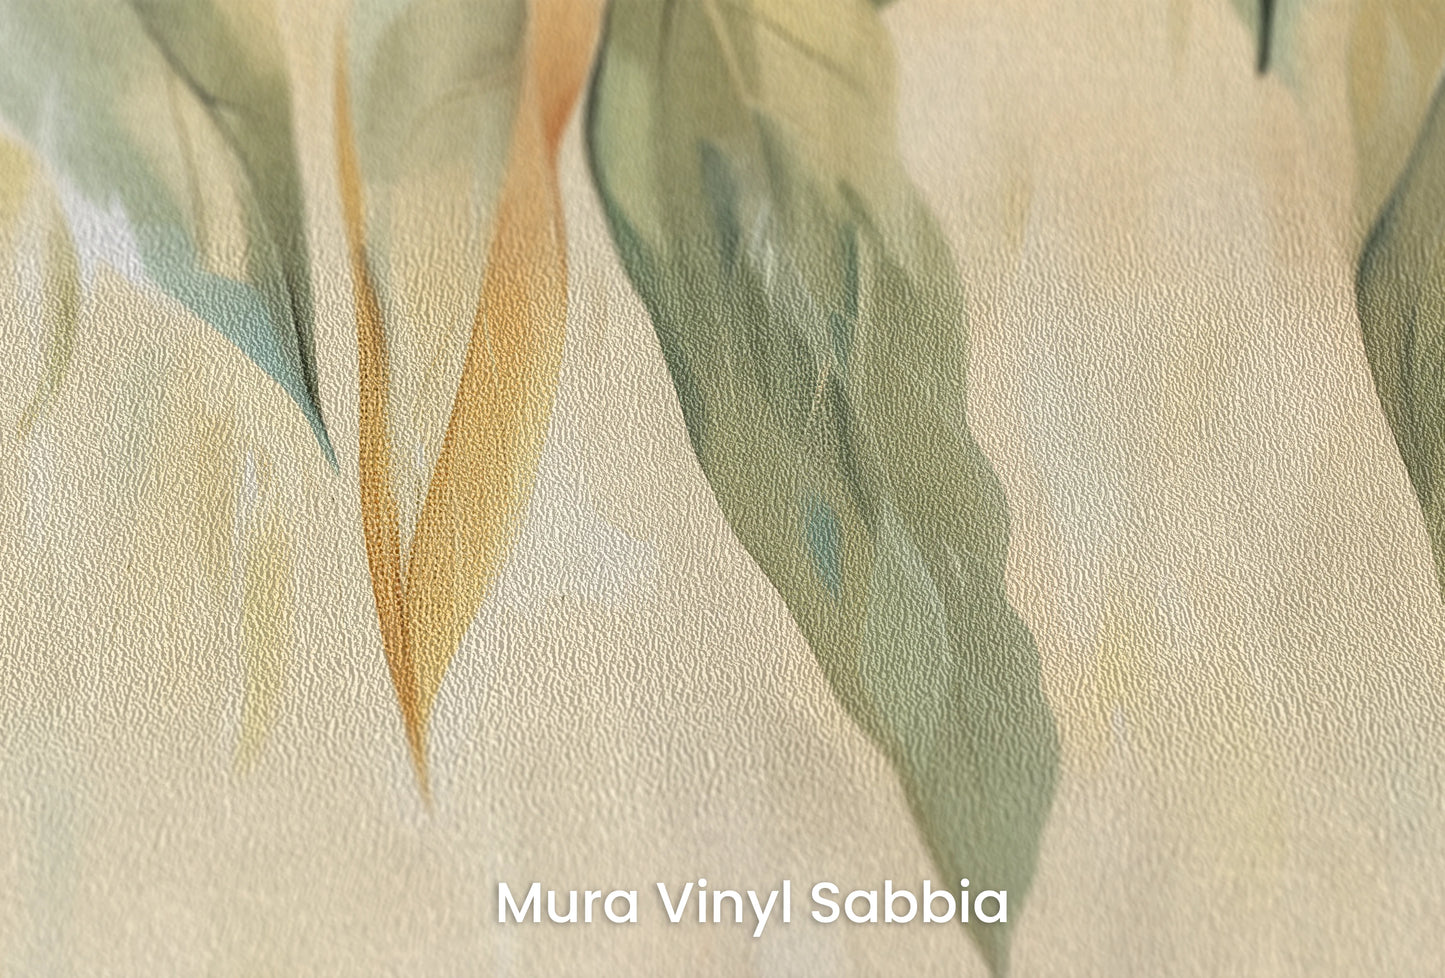 Zbliżenie na artystyczną fototapetę o nazwie Whimsical Fall na podłożu Mura Vinyl Sabbia struktura grubego ziarna piasku.